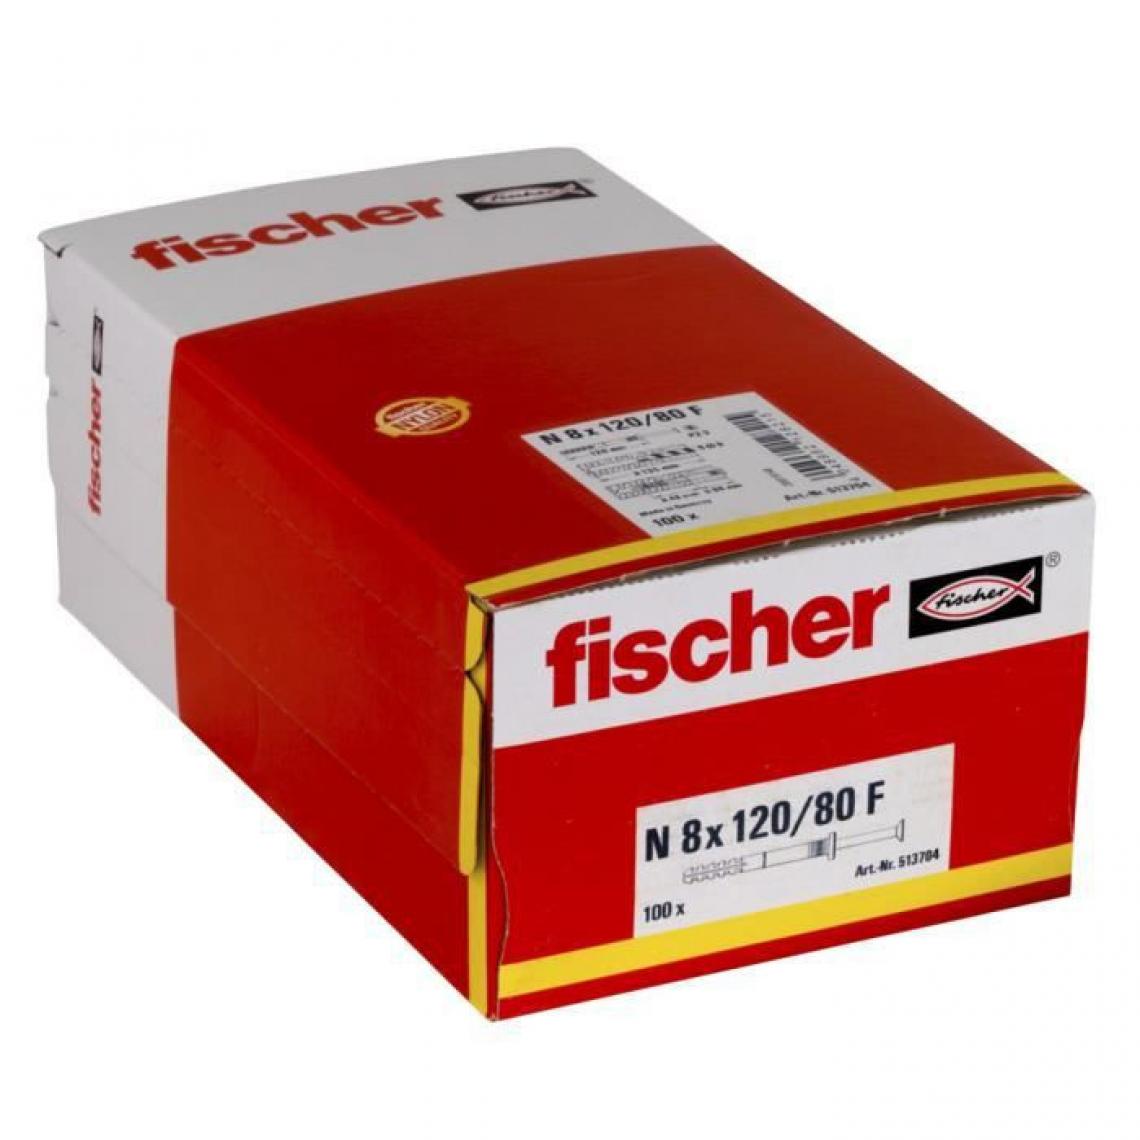 Fischer - FISCHER - Cheville clou NF 8x120/80 avec collerette épaisse et clou tete fraisée - Boîte de 100 - Cheville